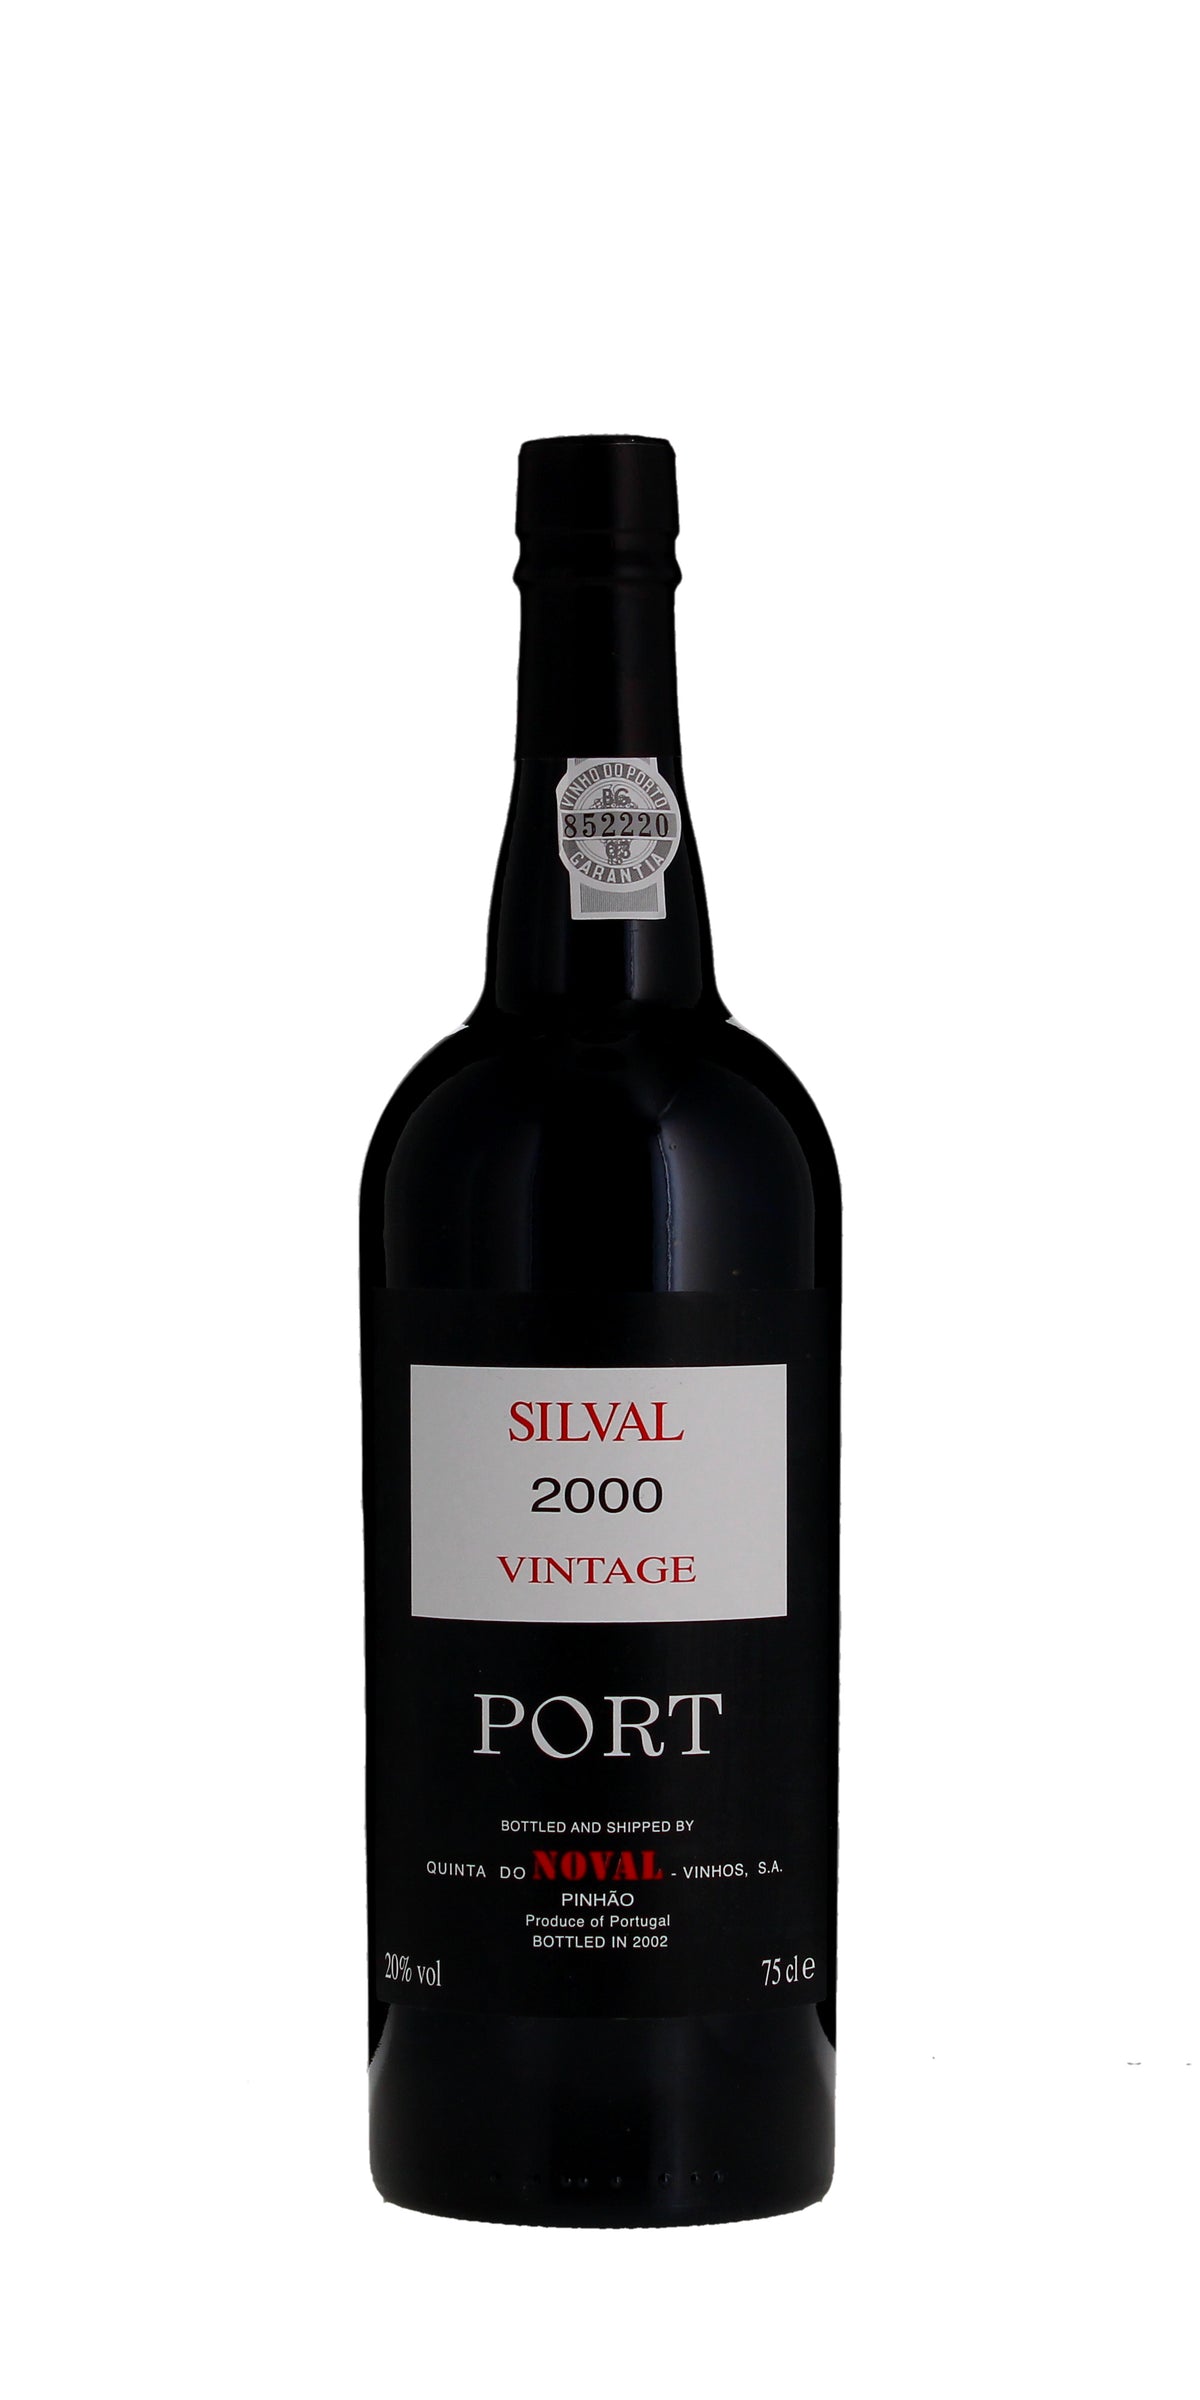 Quinta do Noval, Vintage Port, Silval 2000